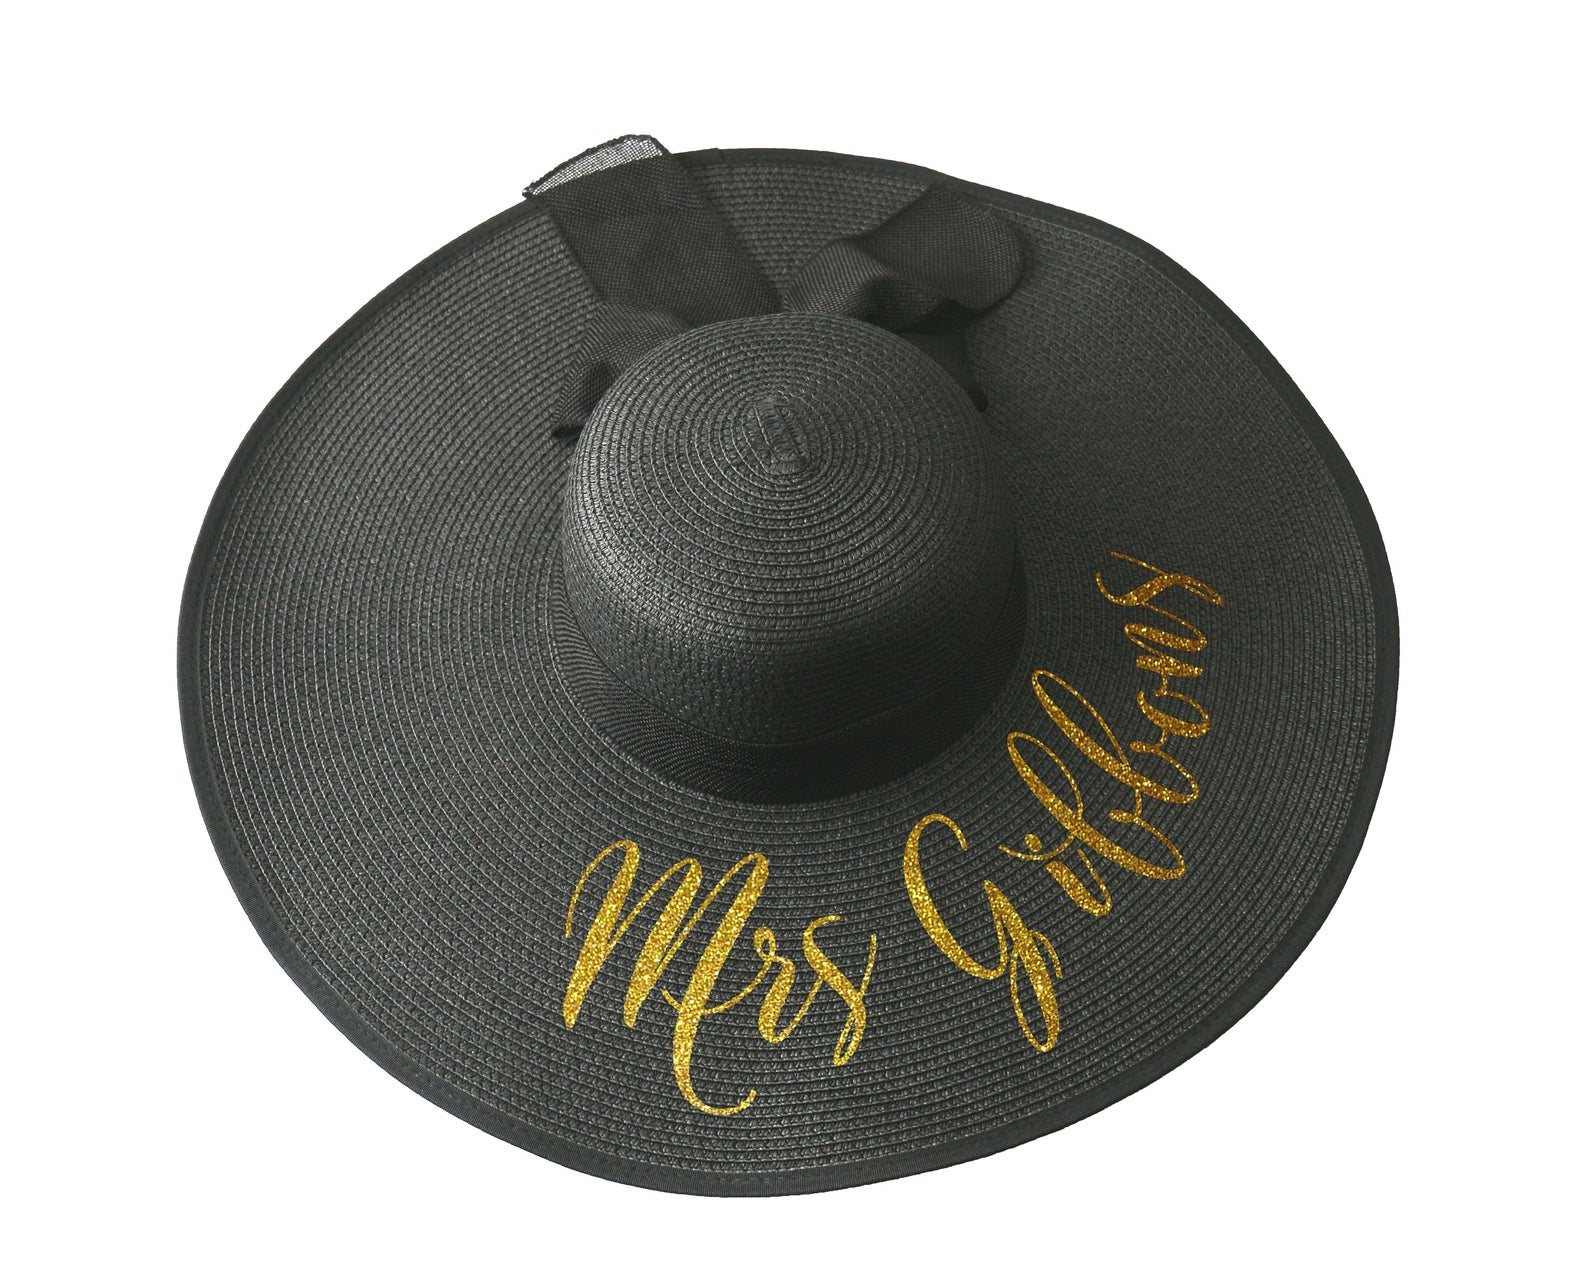 Custom Monogram Floppy Hat Personalized Sun Hat Women's Beach Hat  Monogrammed Kentucky Derby Hat, Bachelorette Party Hats